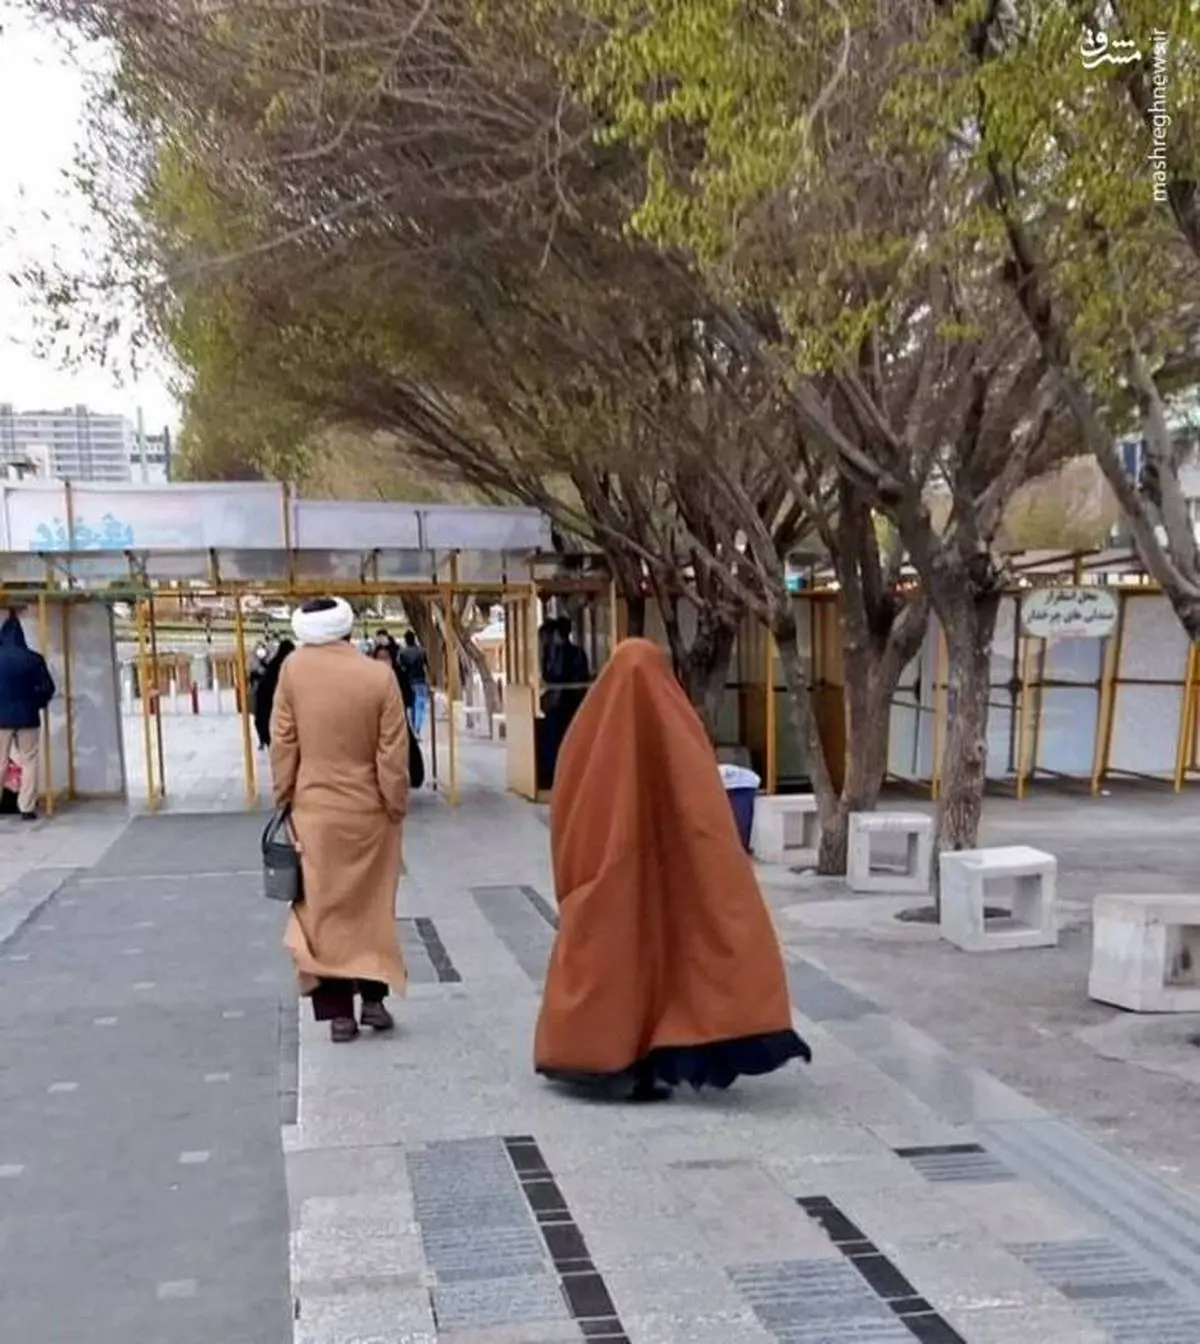 عاشقانه یک روحانی برای همسرش در خیابان های مشهد + عکس